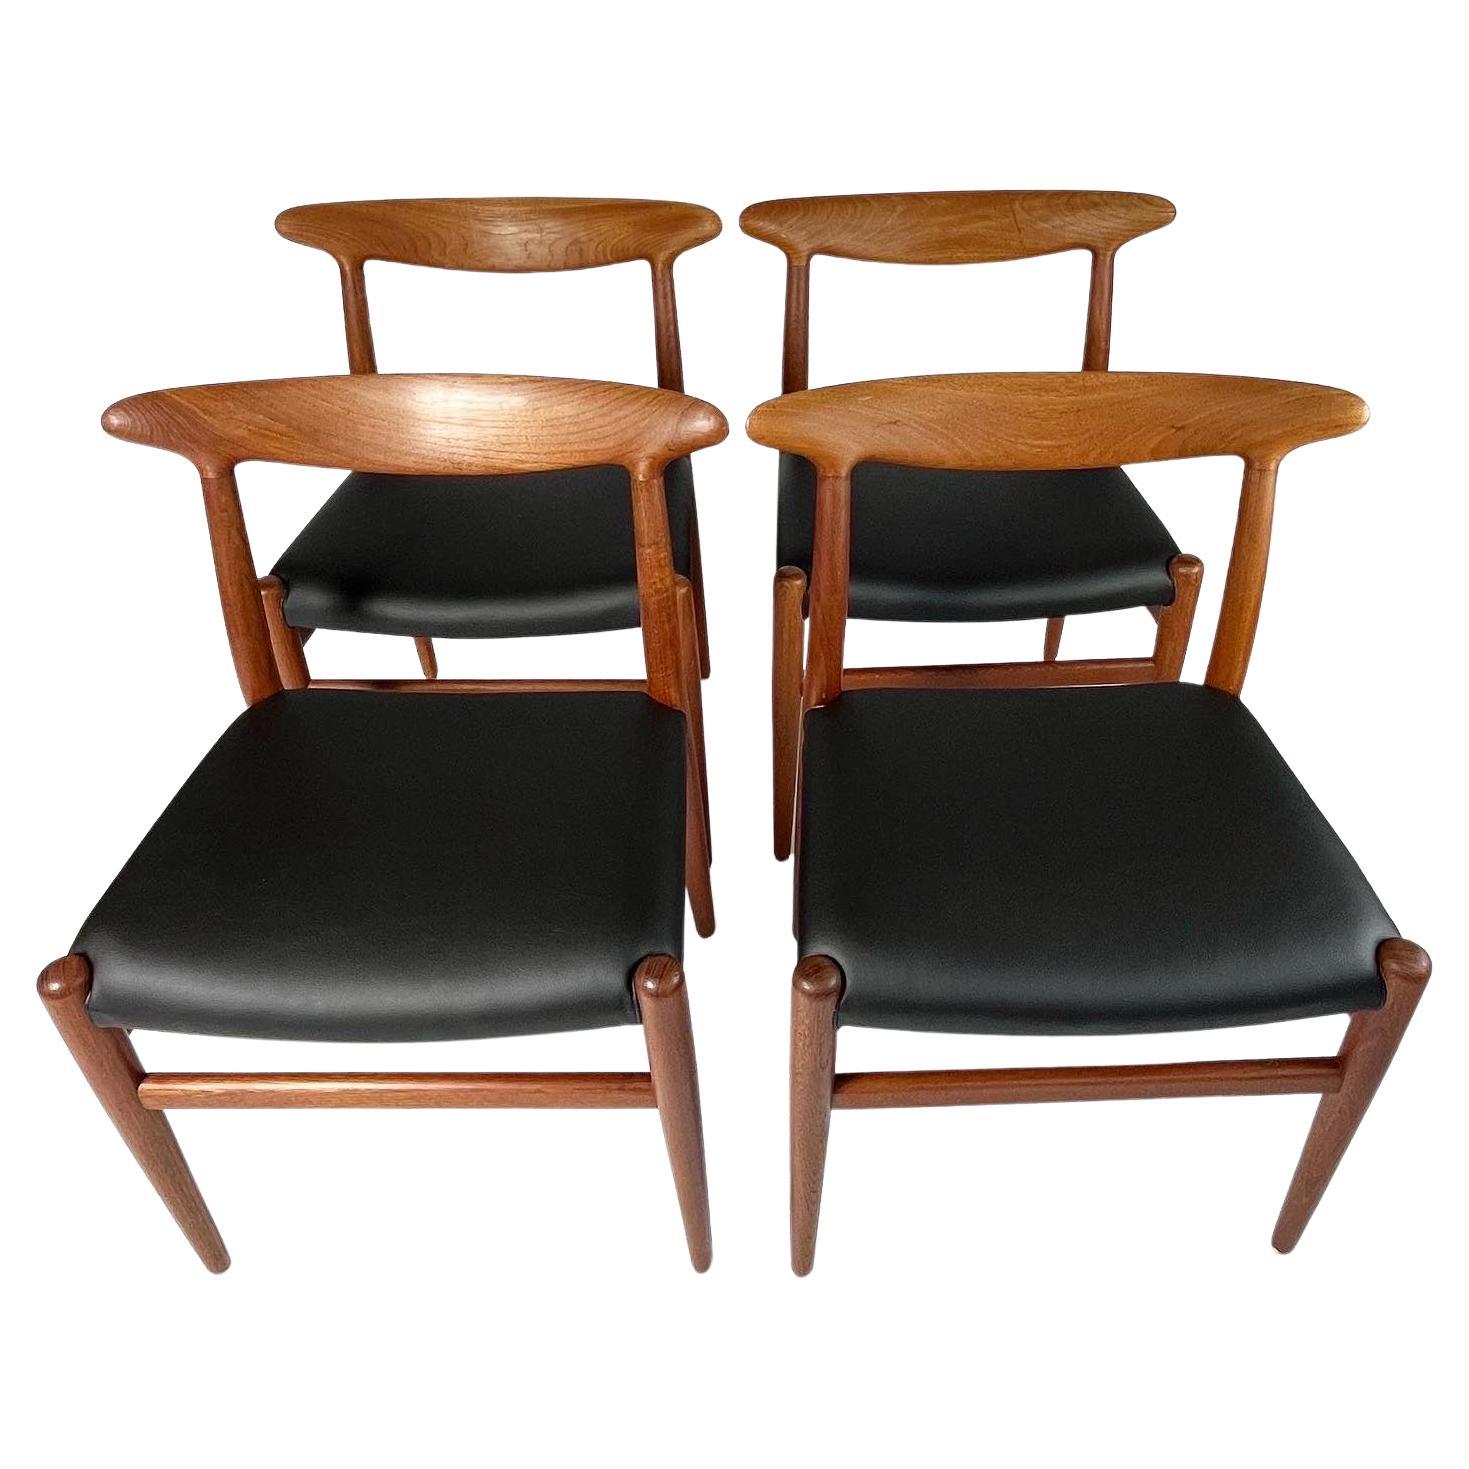 Satz von vier Hans J. Wegner Esszimmerstühlen, Modell W2, entworfen 1953 für C.M. Madsens Fabriker in Dänemark.

Massive Teakholzrahmen, neu gepolstert mit preisgekröntem schwarzem Kakteenleder von  Desserto, eine schöne pflanzliche und